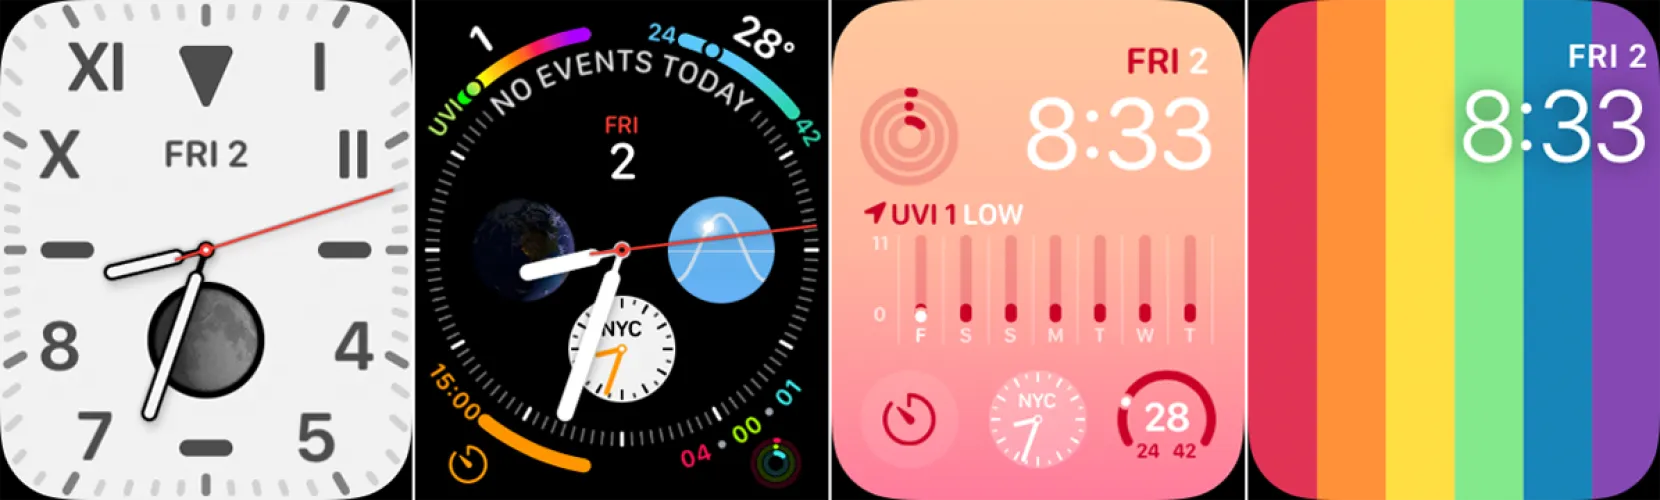 文章:《切换你的智能手表：如何改变和调整Apple Watch的面部》_配图3